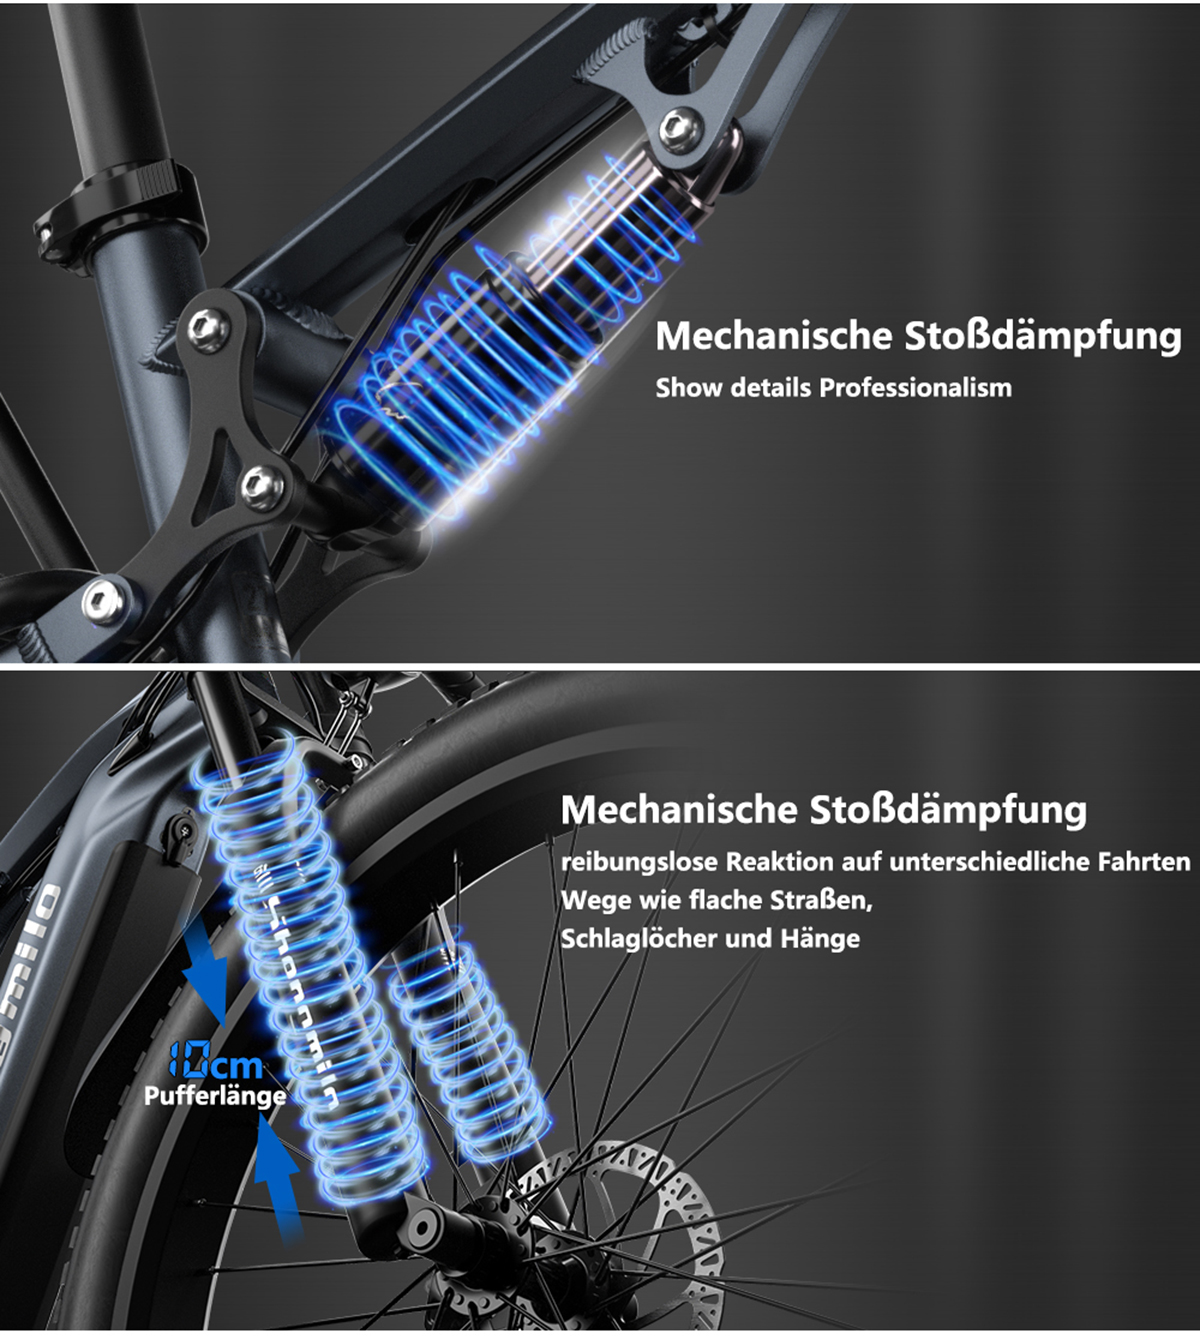 SHENGMILO MX05 840Wh, 26 Zoll, Erwachsenenfahrrad, grau) Scheibenbremse Universal-Elektrofahrrad, Unisex-Rad, (Laufradgröße: Mountainbike